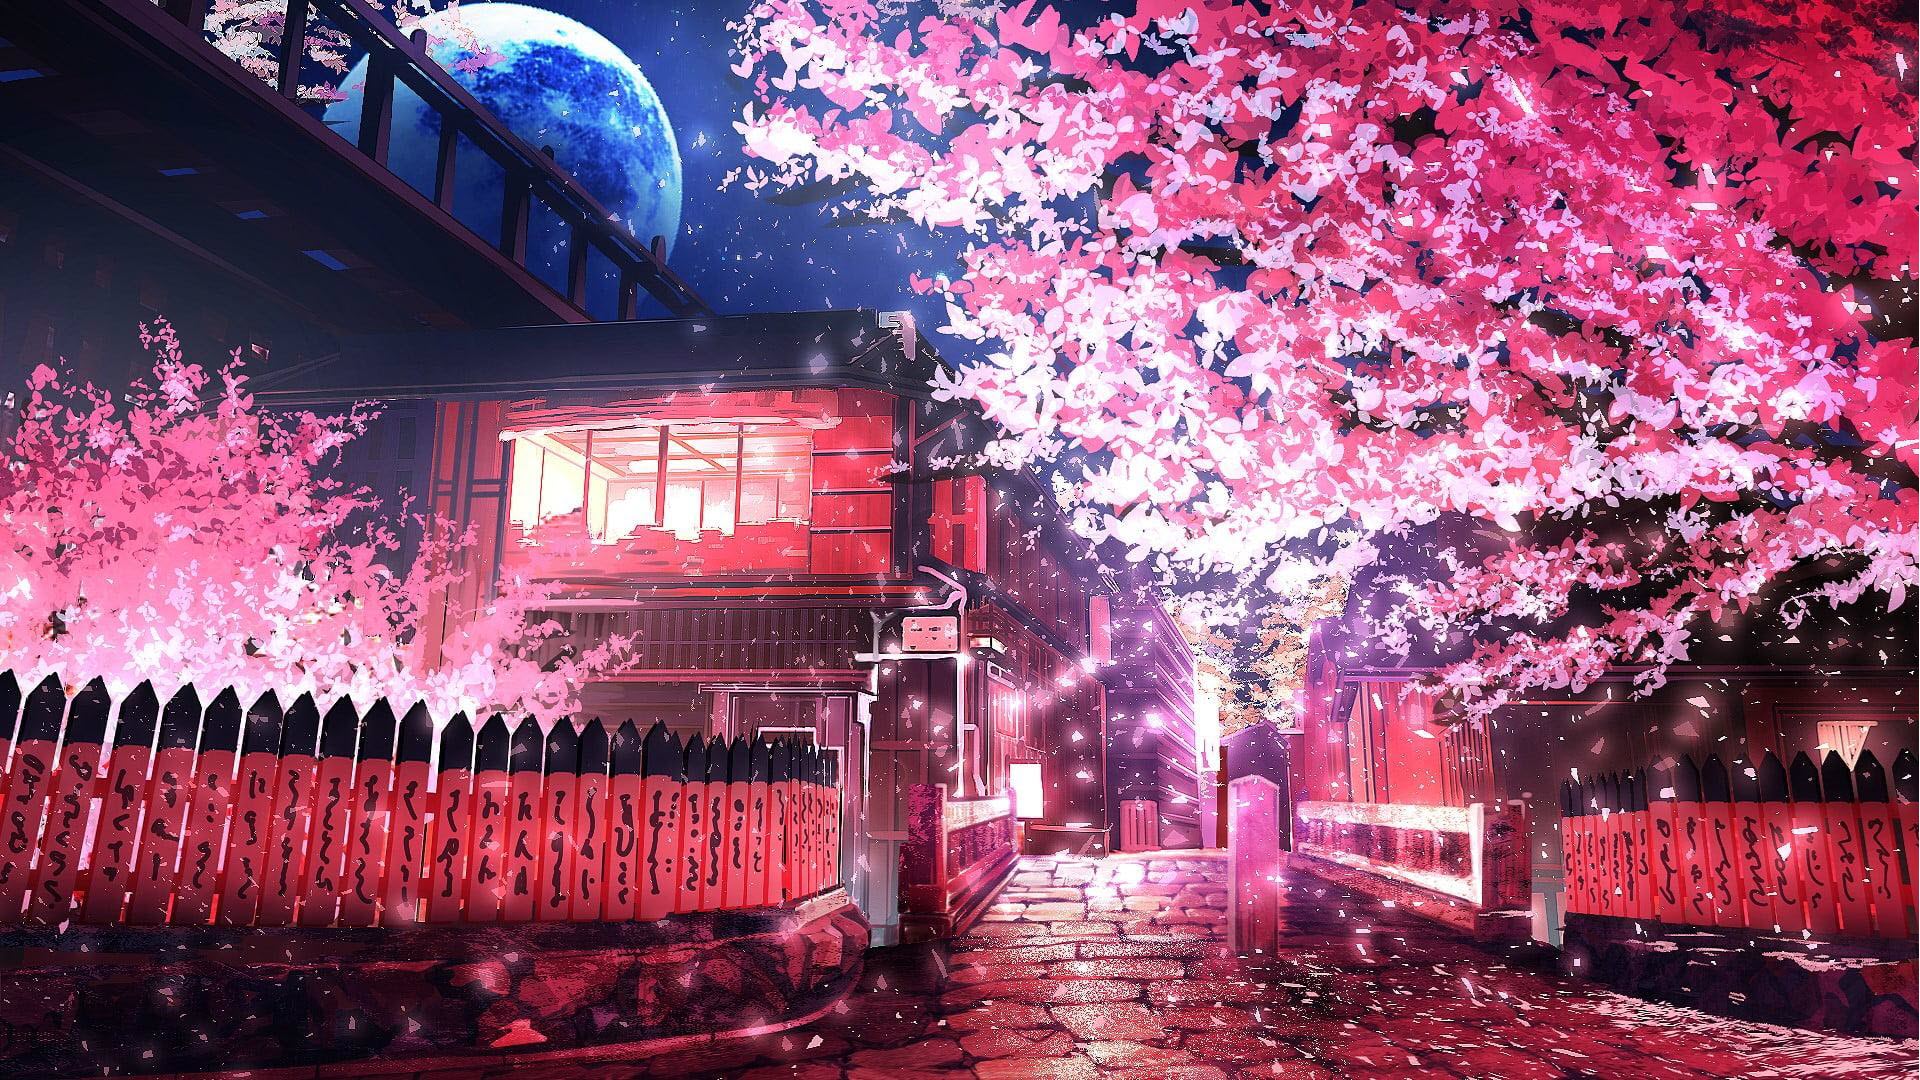 Hình nền Anime phong cảnh hoa anh đào Full HD